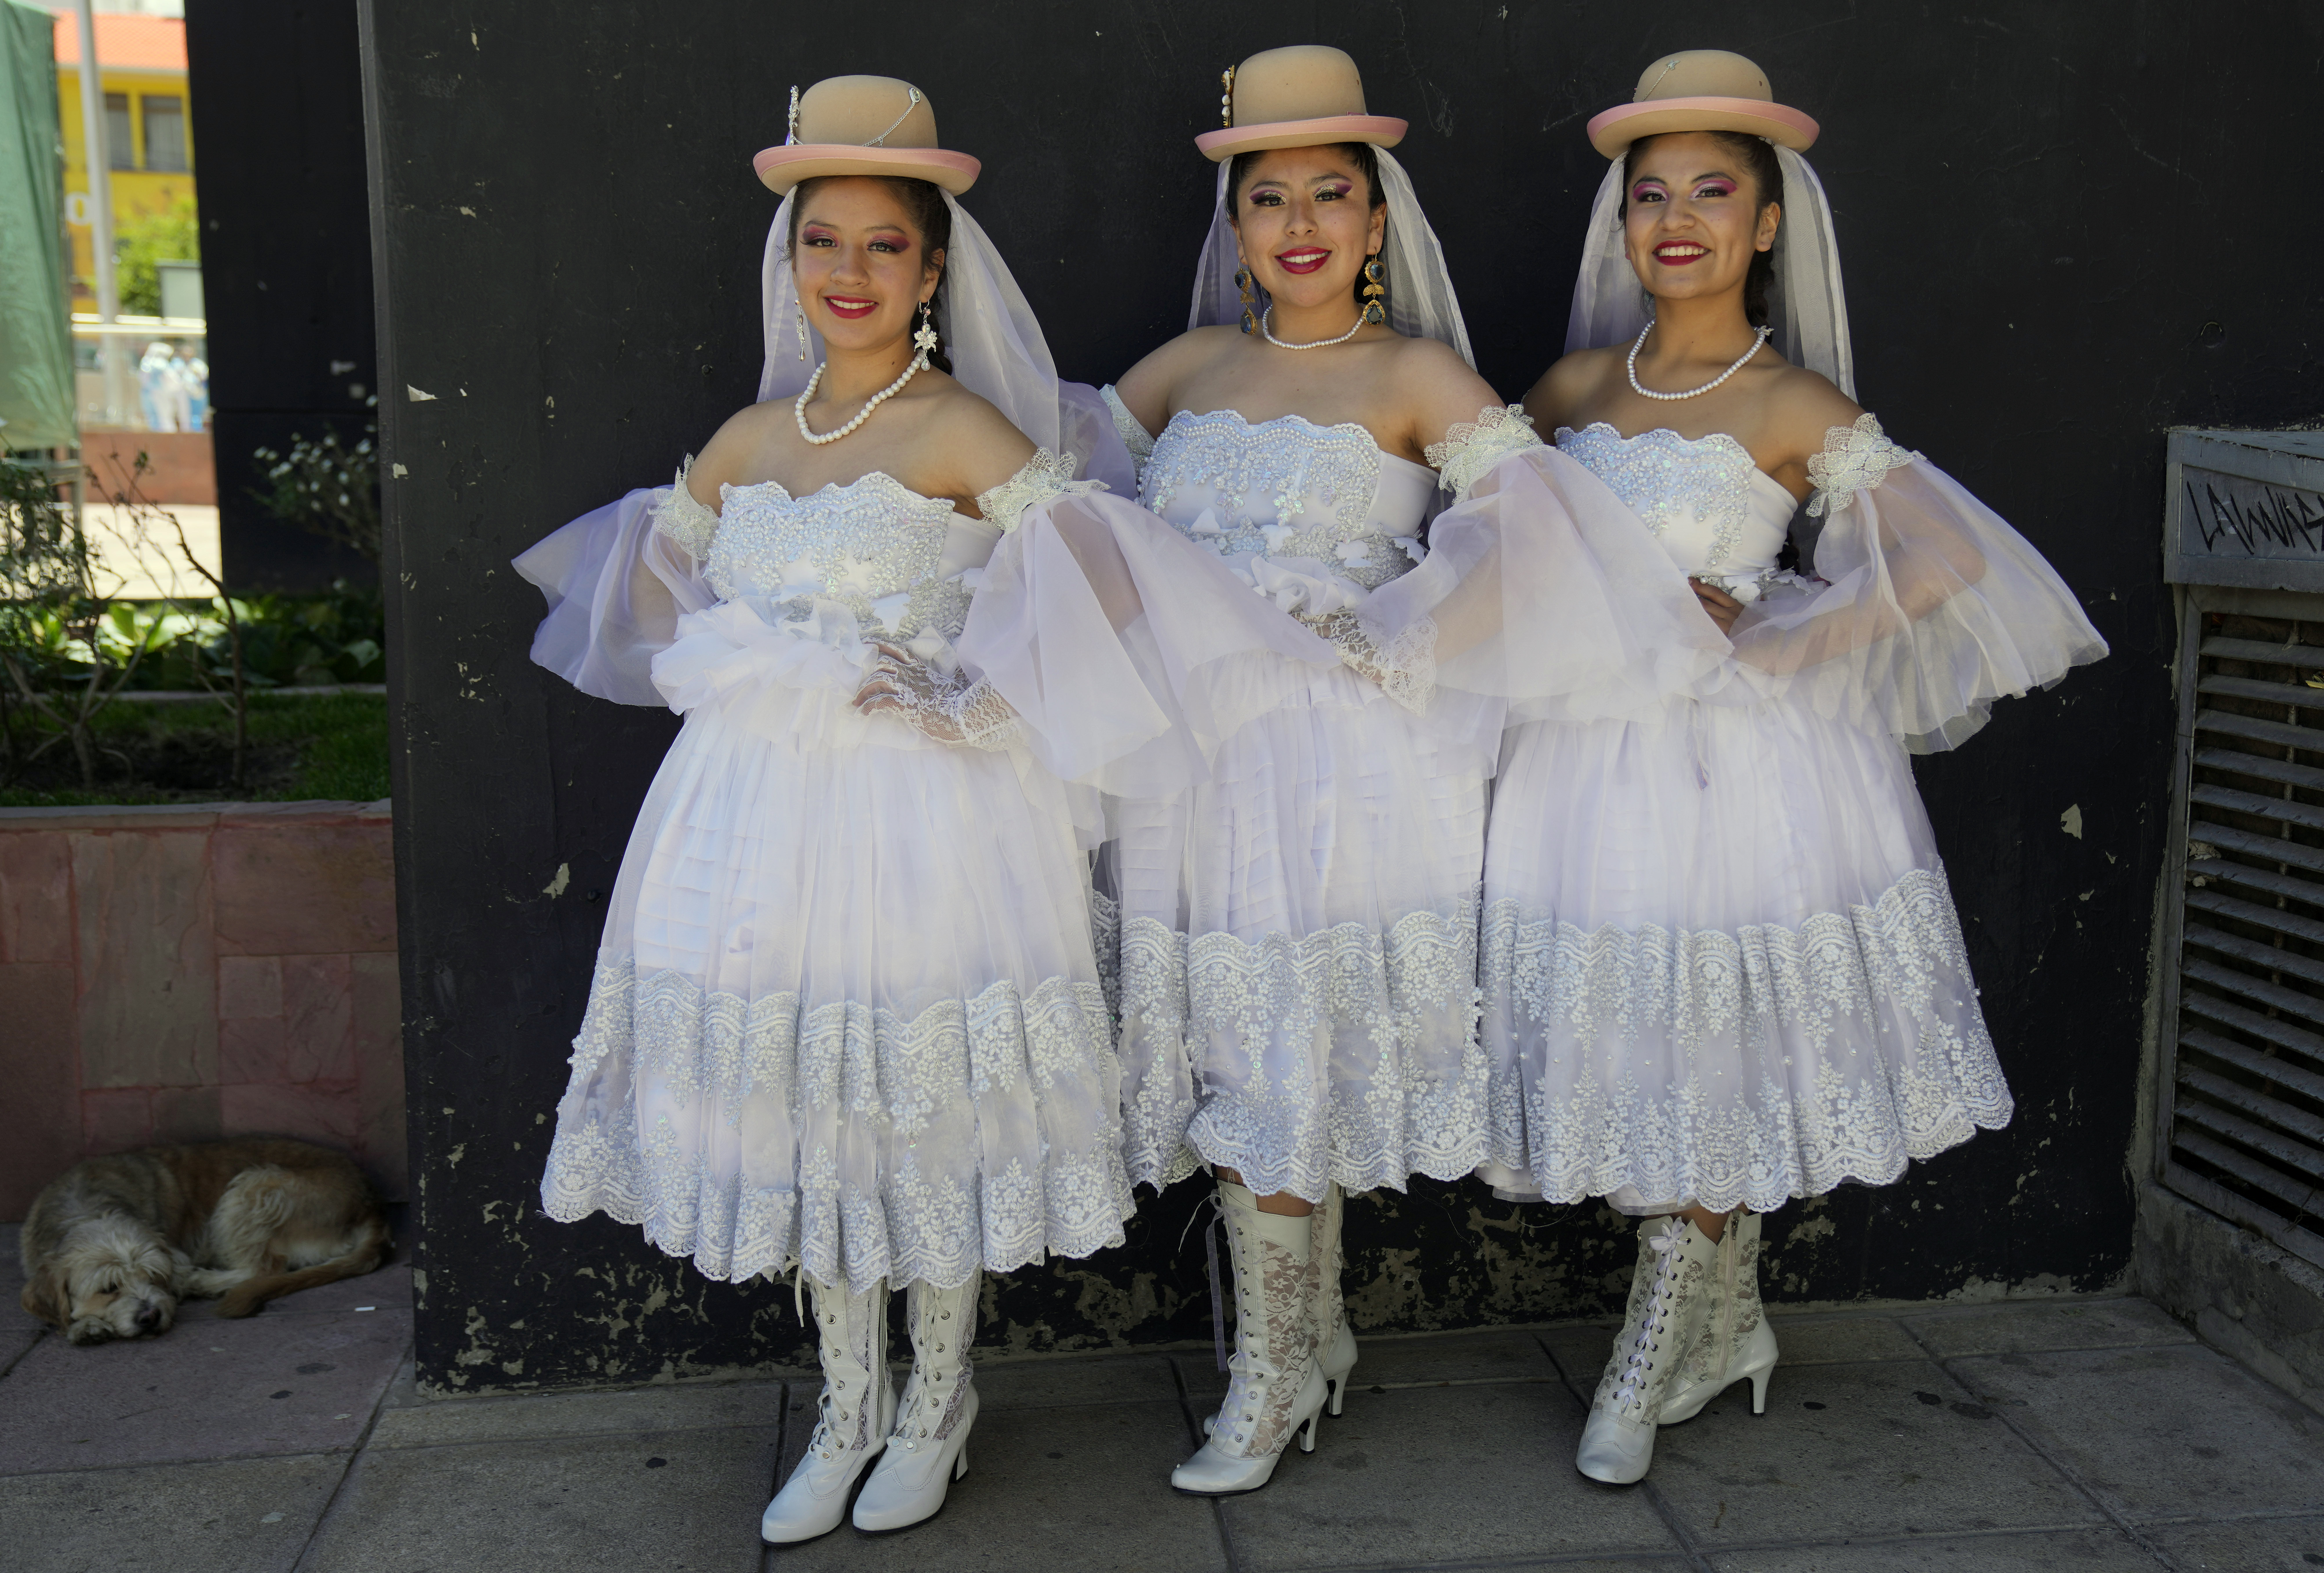 Tres mujeres vestidas de novia posan para una foto antes de la boda de Pepino, un personaje del Carnaval, en La Paz, Bolivia, el 12 de febrero de 2023. La parodia de enlace forma parte de los festejos previos al Carnaval. (AP Foto/Juan Karita)